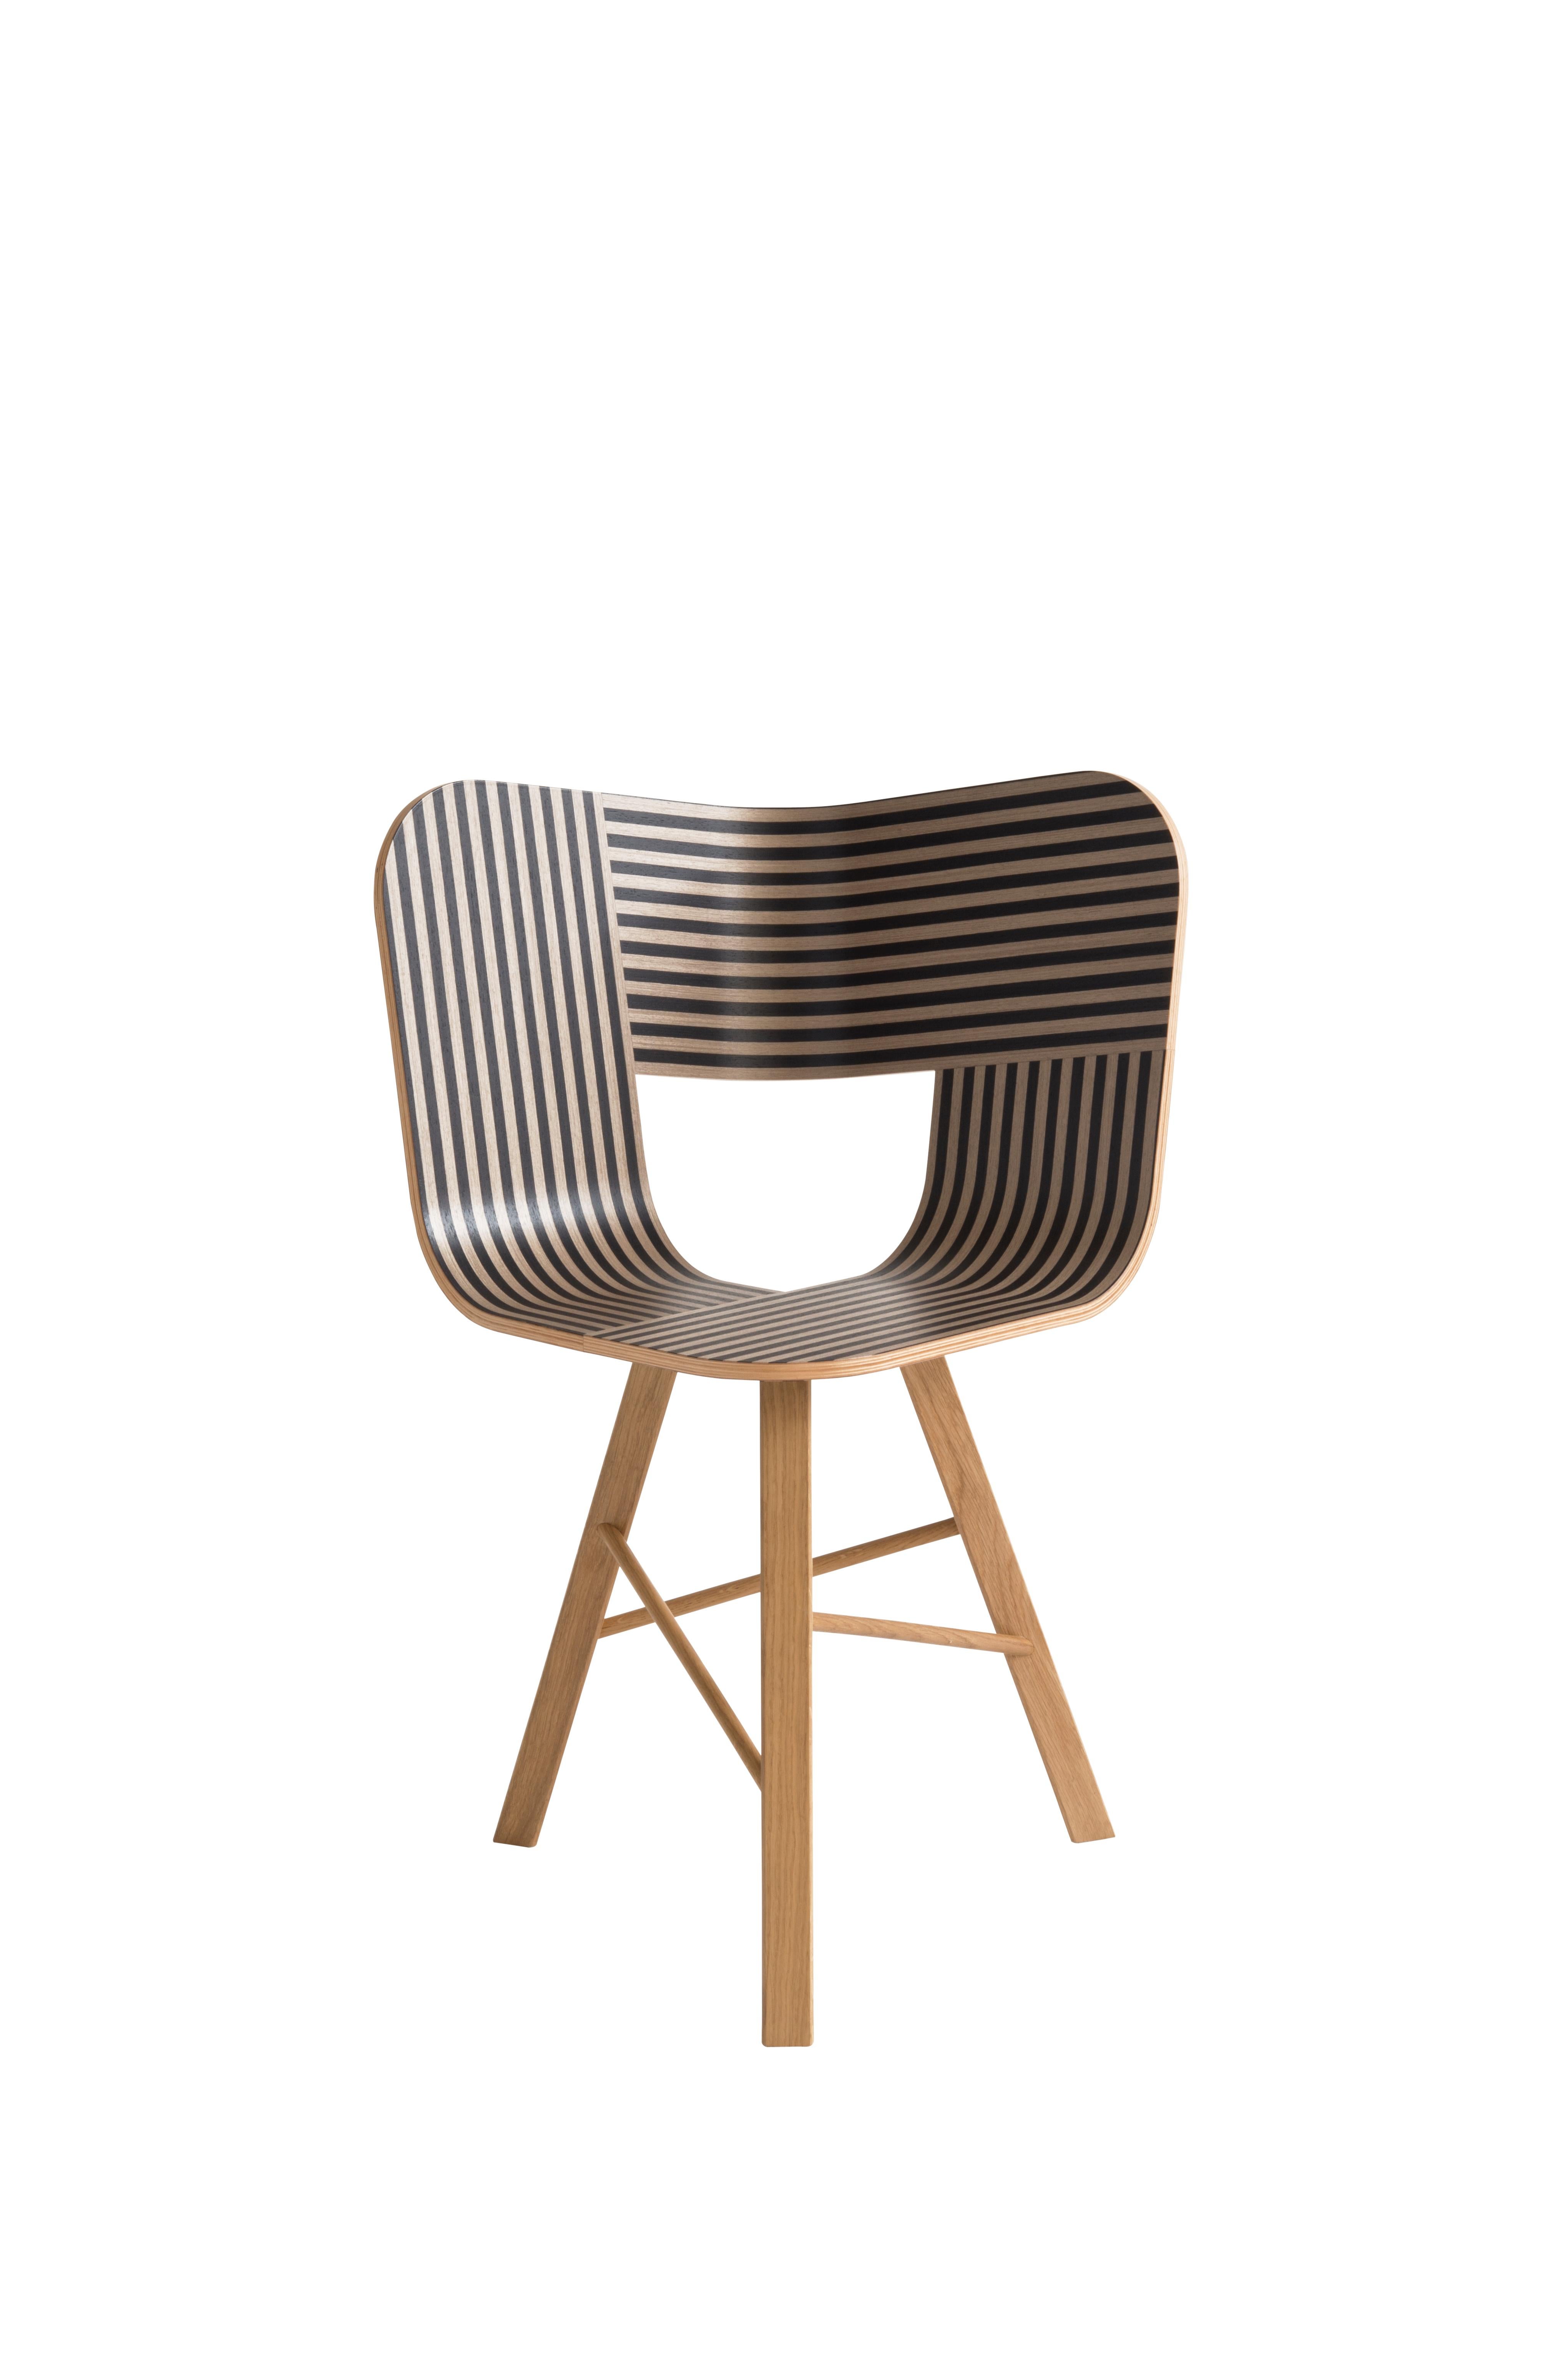 Chaise à 3 pieds Tria, assise rayée ivoire et noire - structure en bois de chêne massif par Colé Italia avec Lorenz+Kaz
Dimensions : H 82,5, P 52, L 61 cm
MATERIAL : chaise en contreplaqué ; base en chêne massif à 3 pieds.

Disponible également